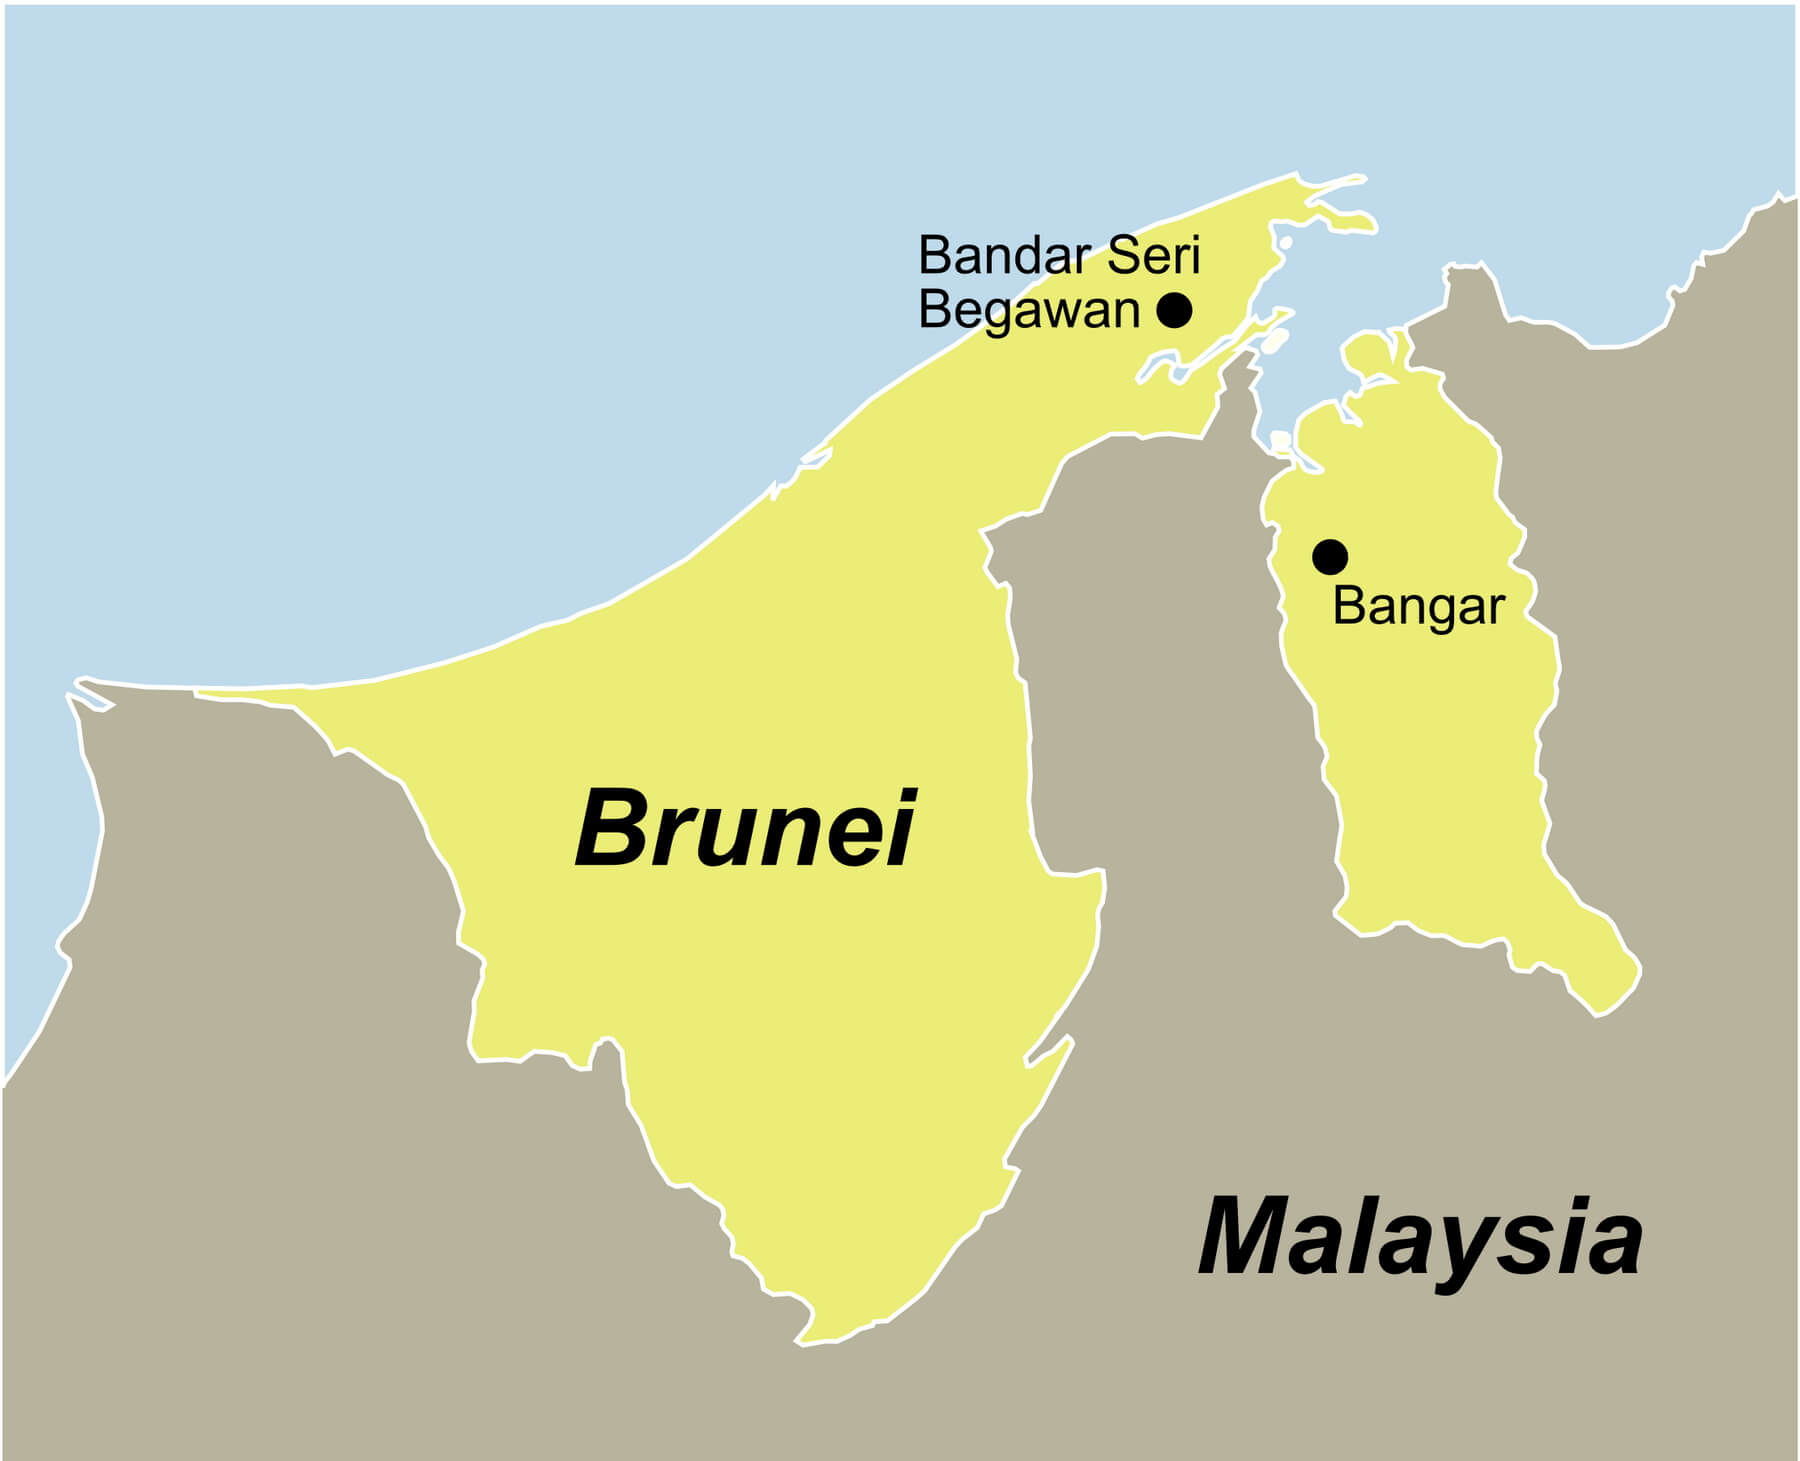 Brunei Traumurlaub anspruchsvoll mit dem Reiseveranstalter reisefieber planen und buchen